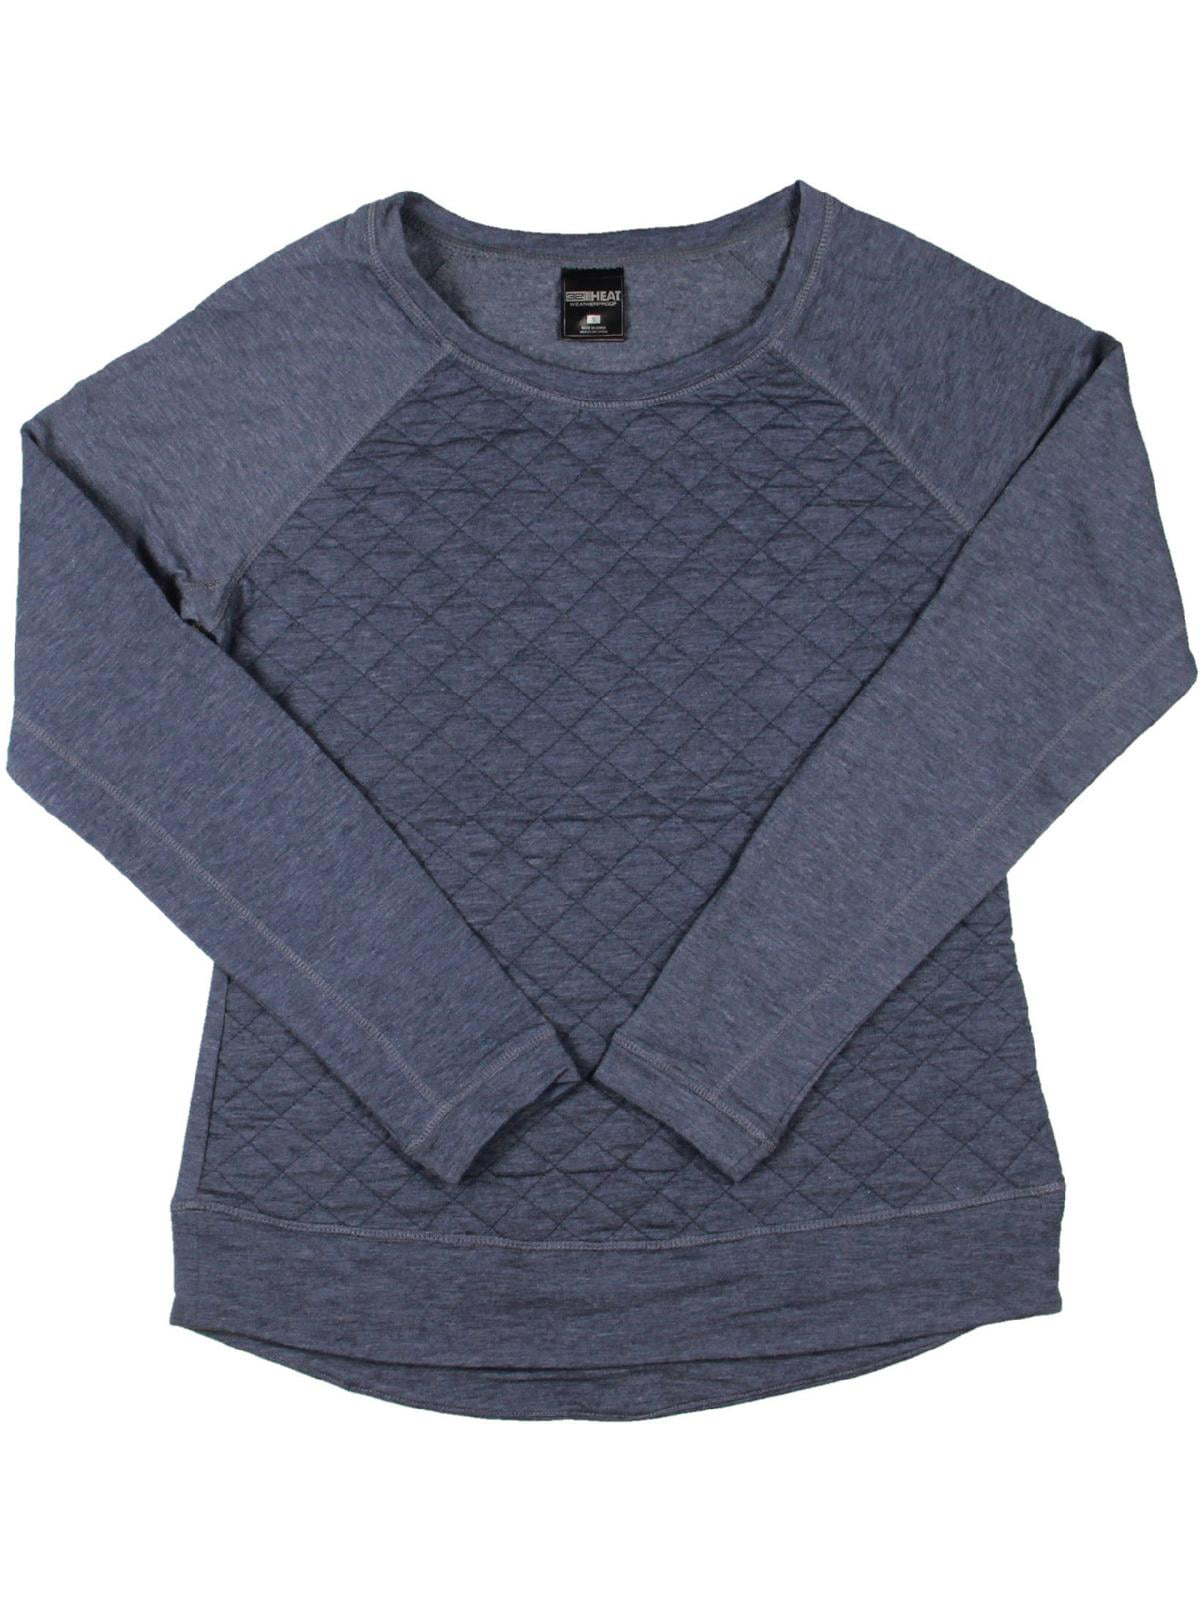 32 Degrees Heat by Weatherproof Womens Quilted Fleece Sweatshirt Blue L ...